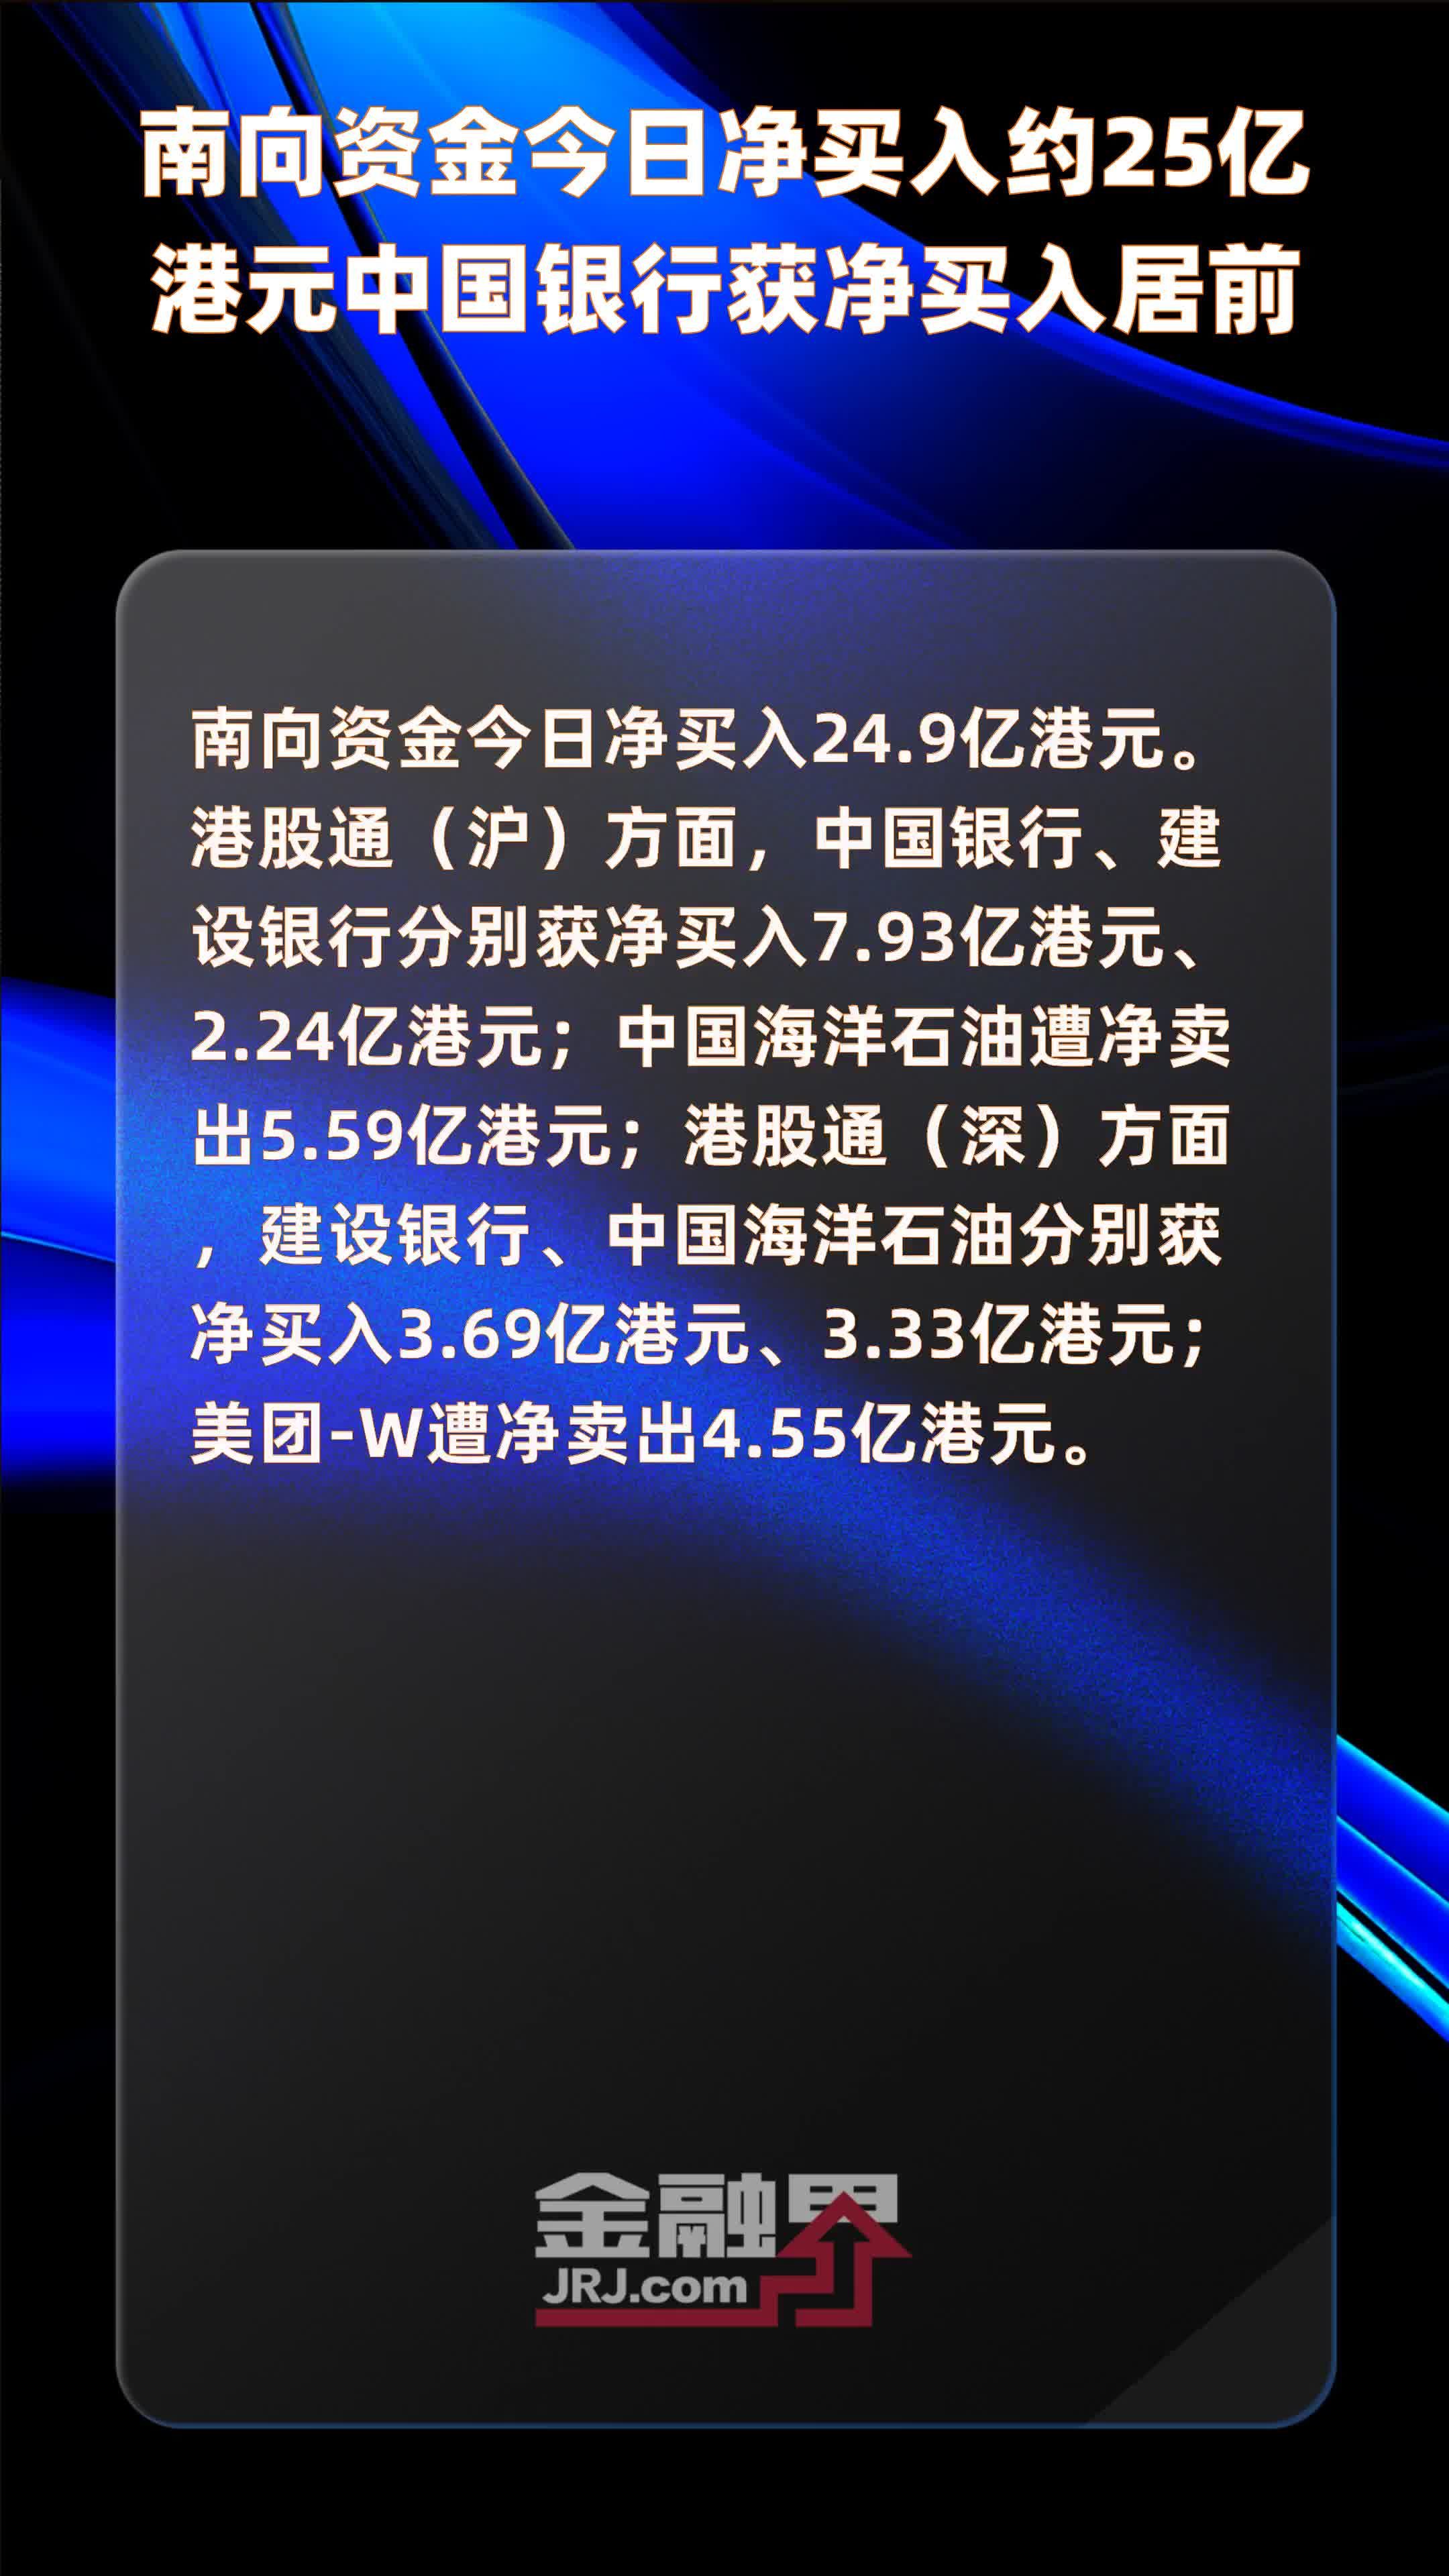 中国银行转账短信截图图片